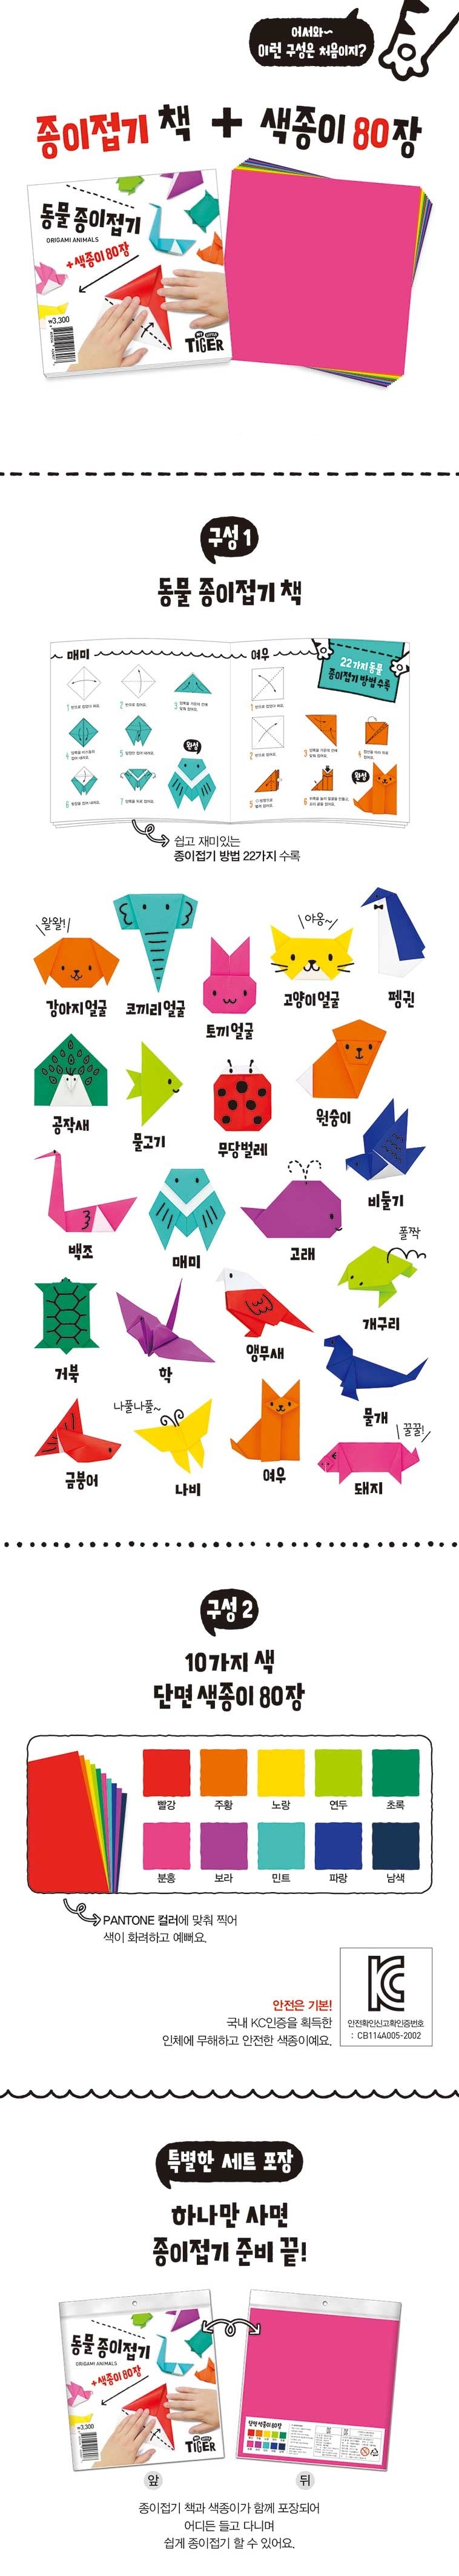 동물 종이접기 (Origami Animals)